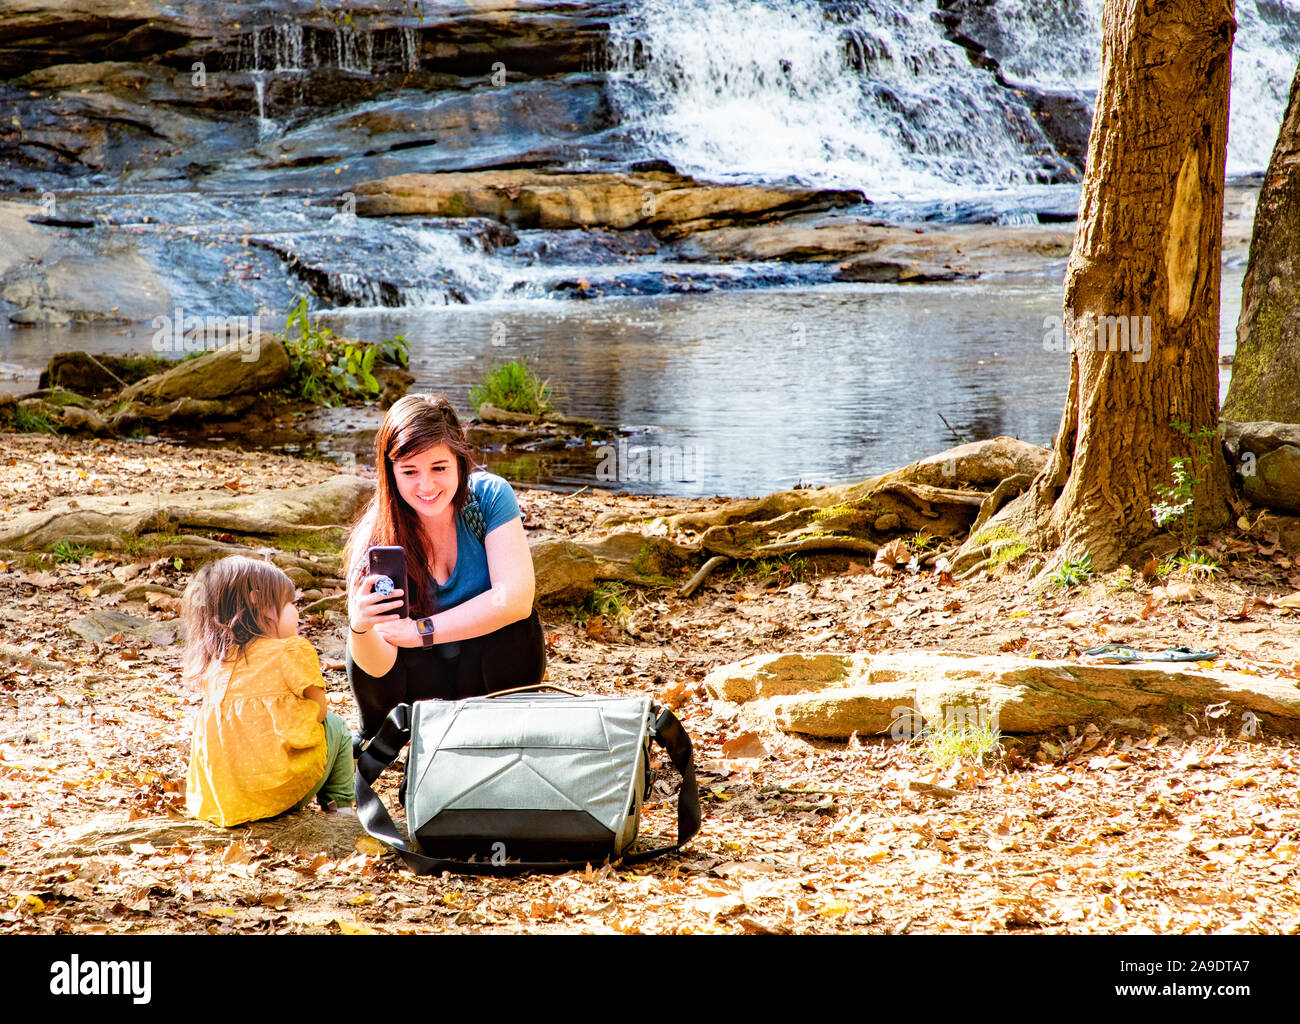 Mama, die Tochter auf dem Handy mit einem Wasserfall im Hintergrund fotografiert Stockfoto